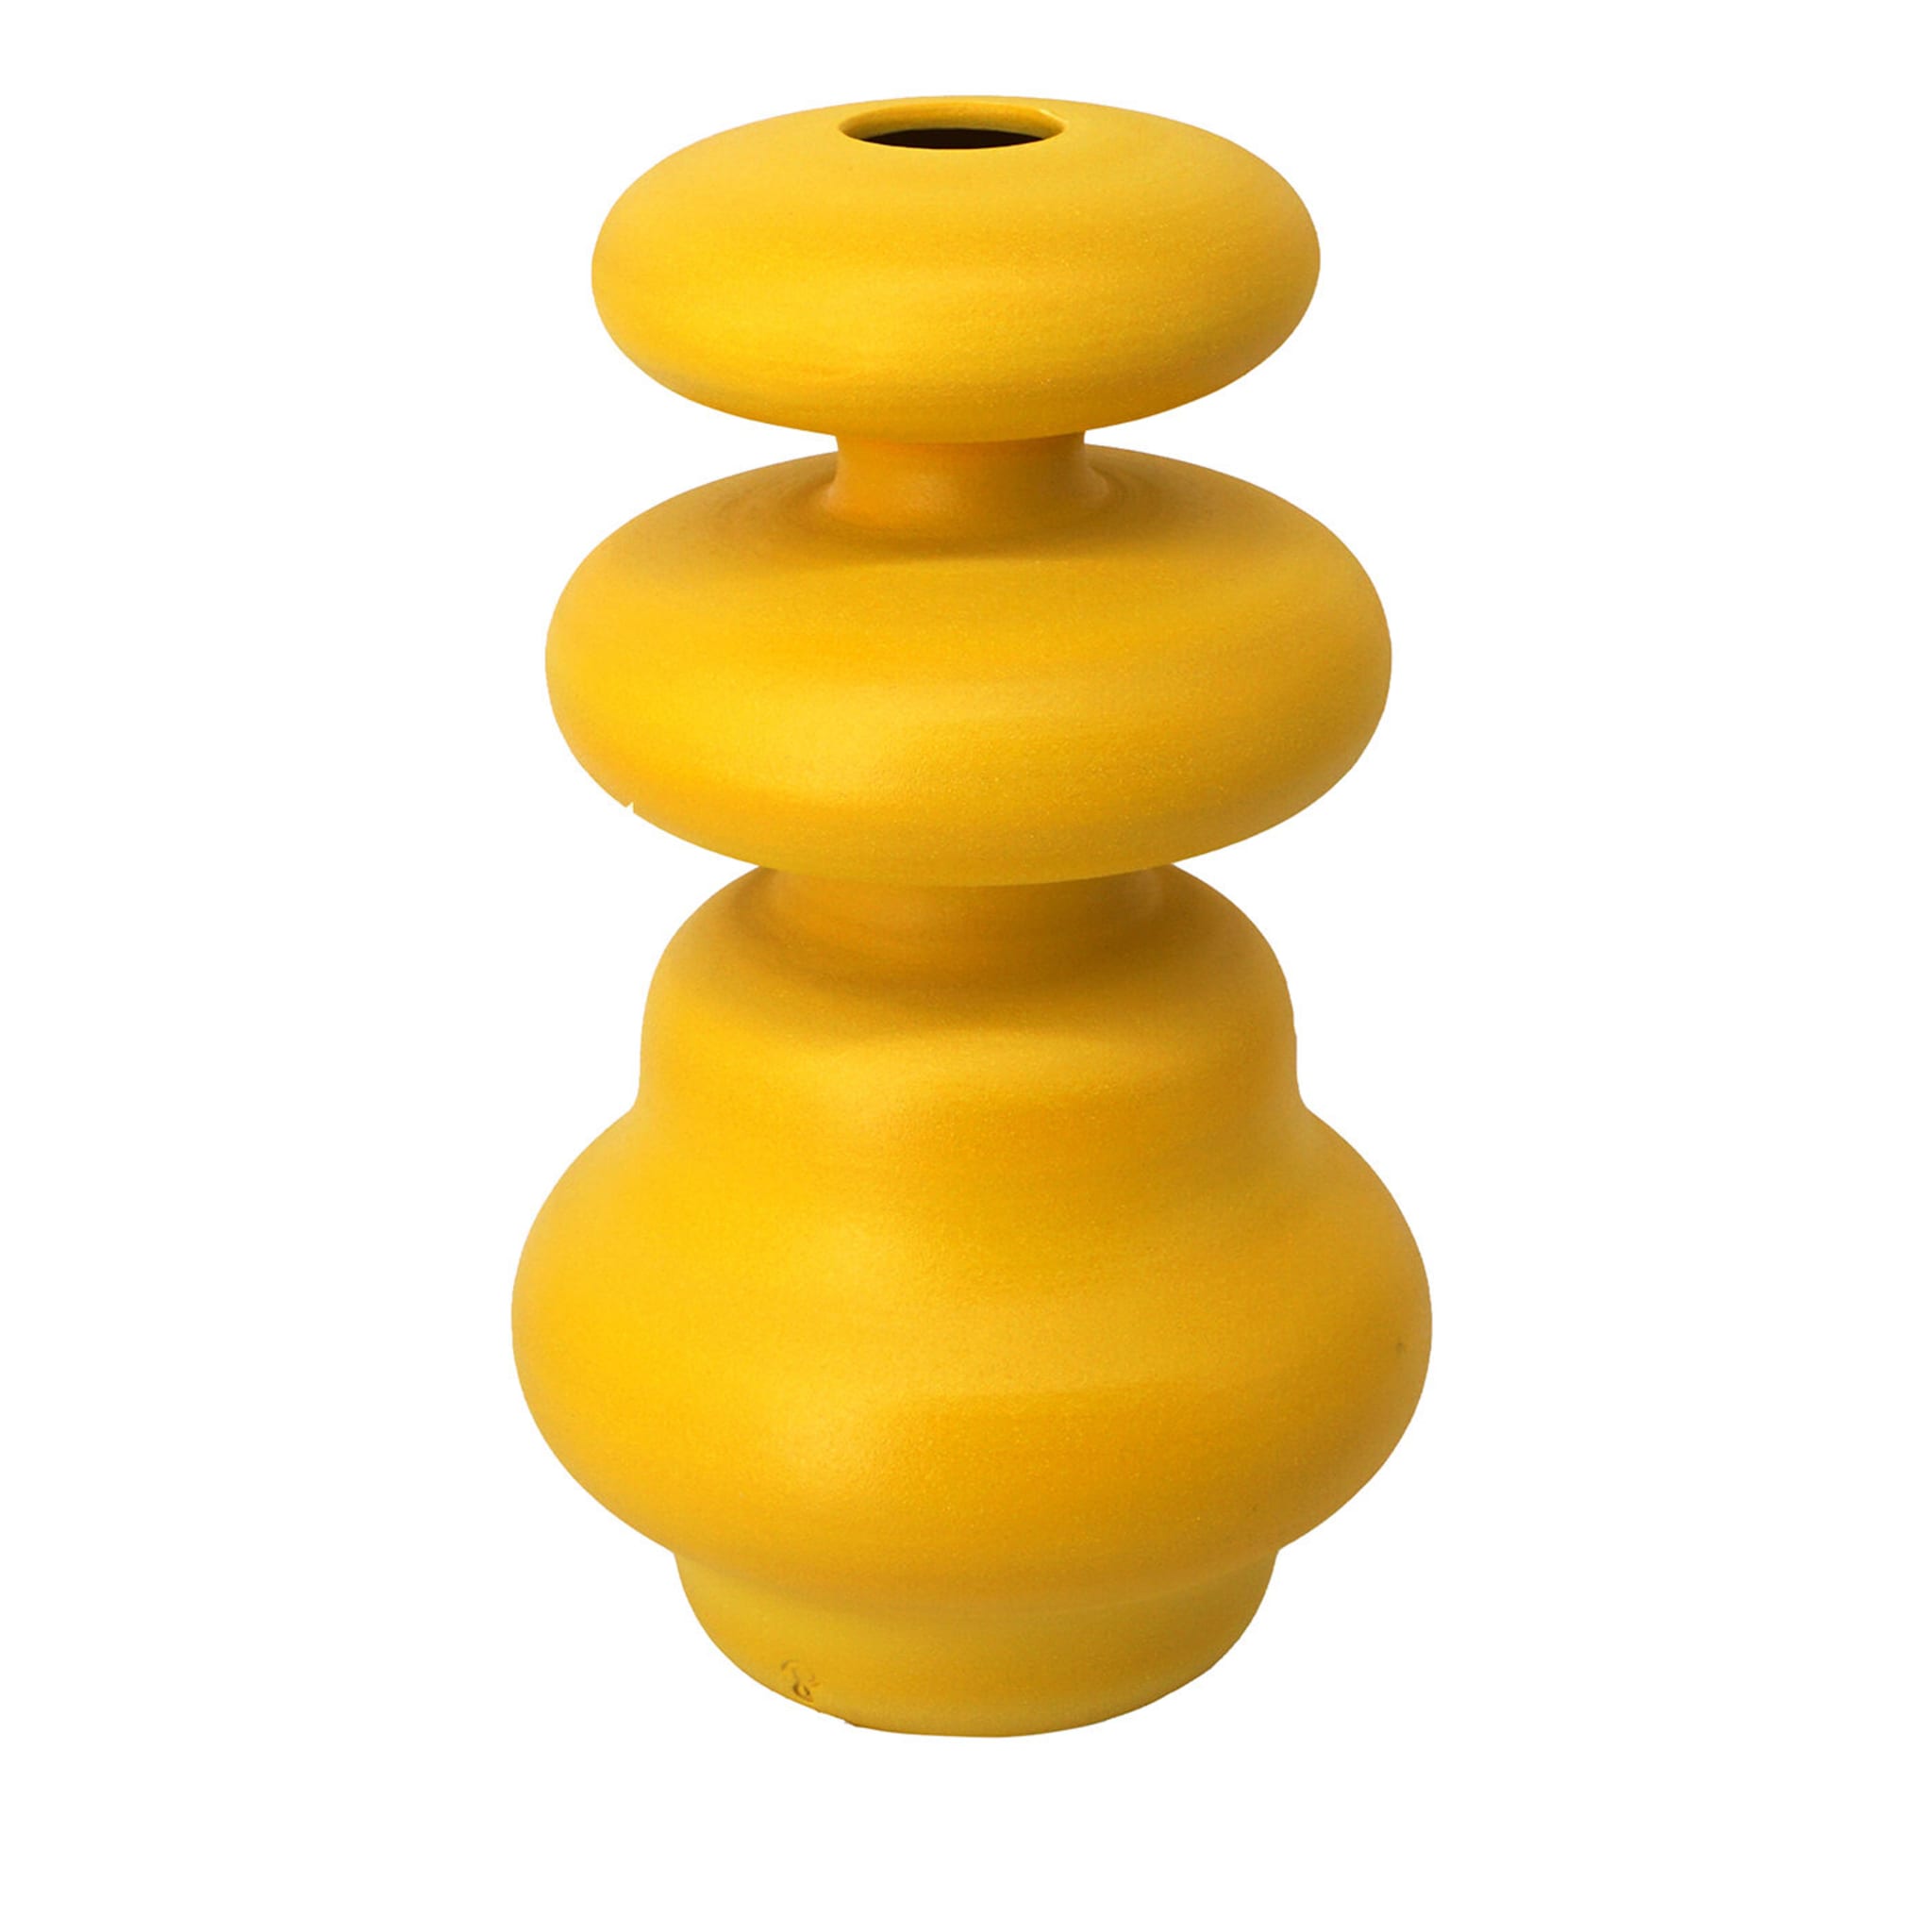 Crisalide Yellow Vase #5 - Main view